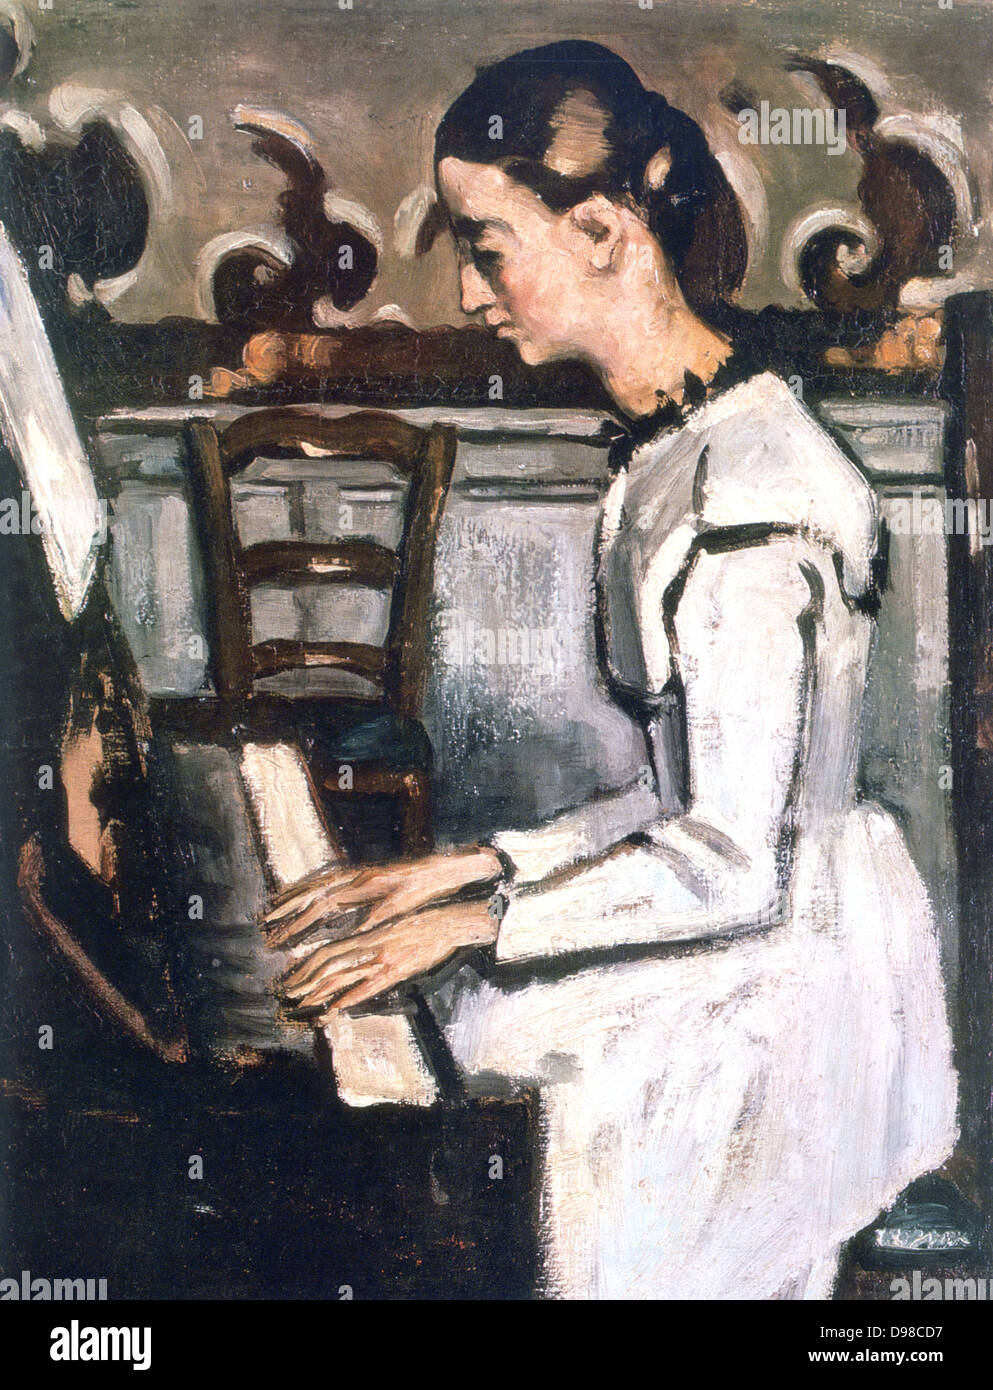 Mädchen am Klavier - Ouvertüre zu "Tannhäuser" (c1868-1869) Detail. Gemälde von Paul Cézanne (1839-1906) französische Post-Impressionisten Maler. Stockfoto